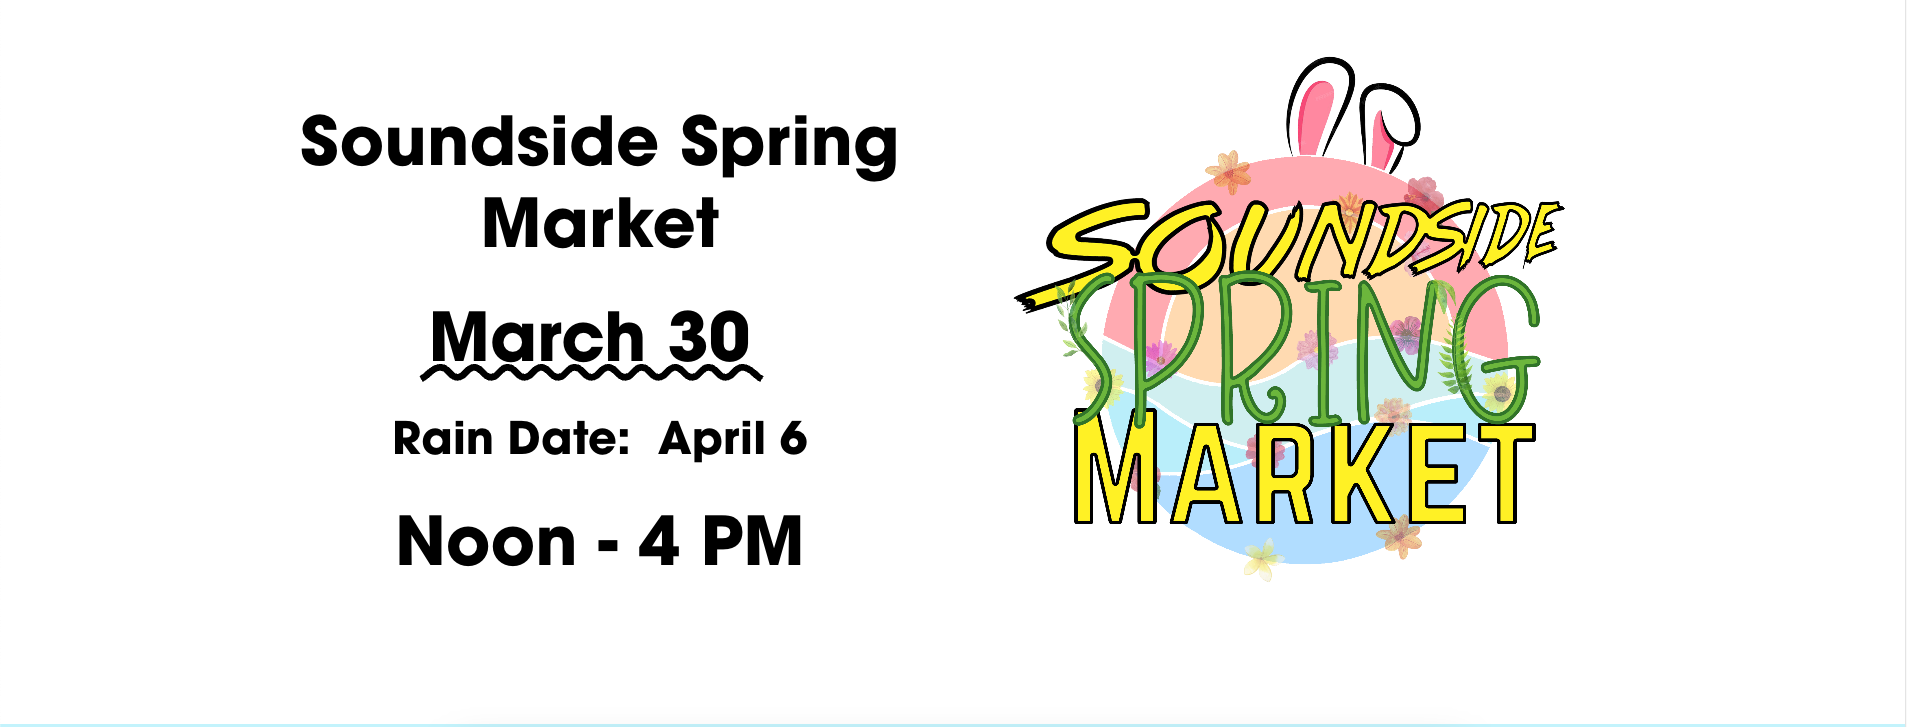 Soundside Spring Market